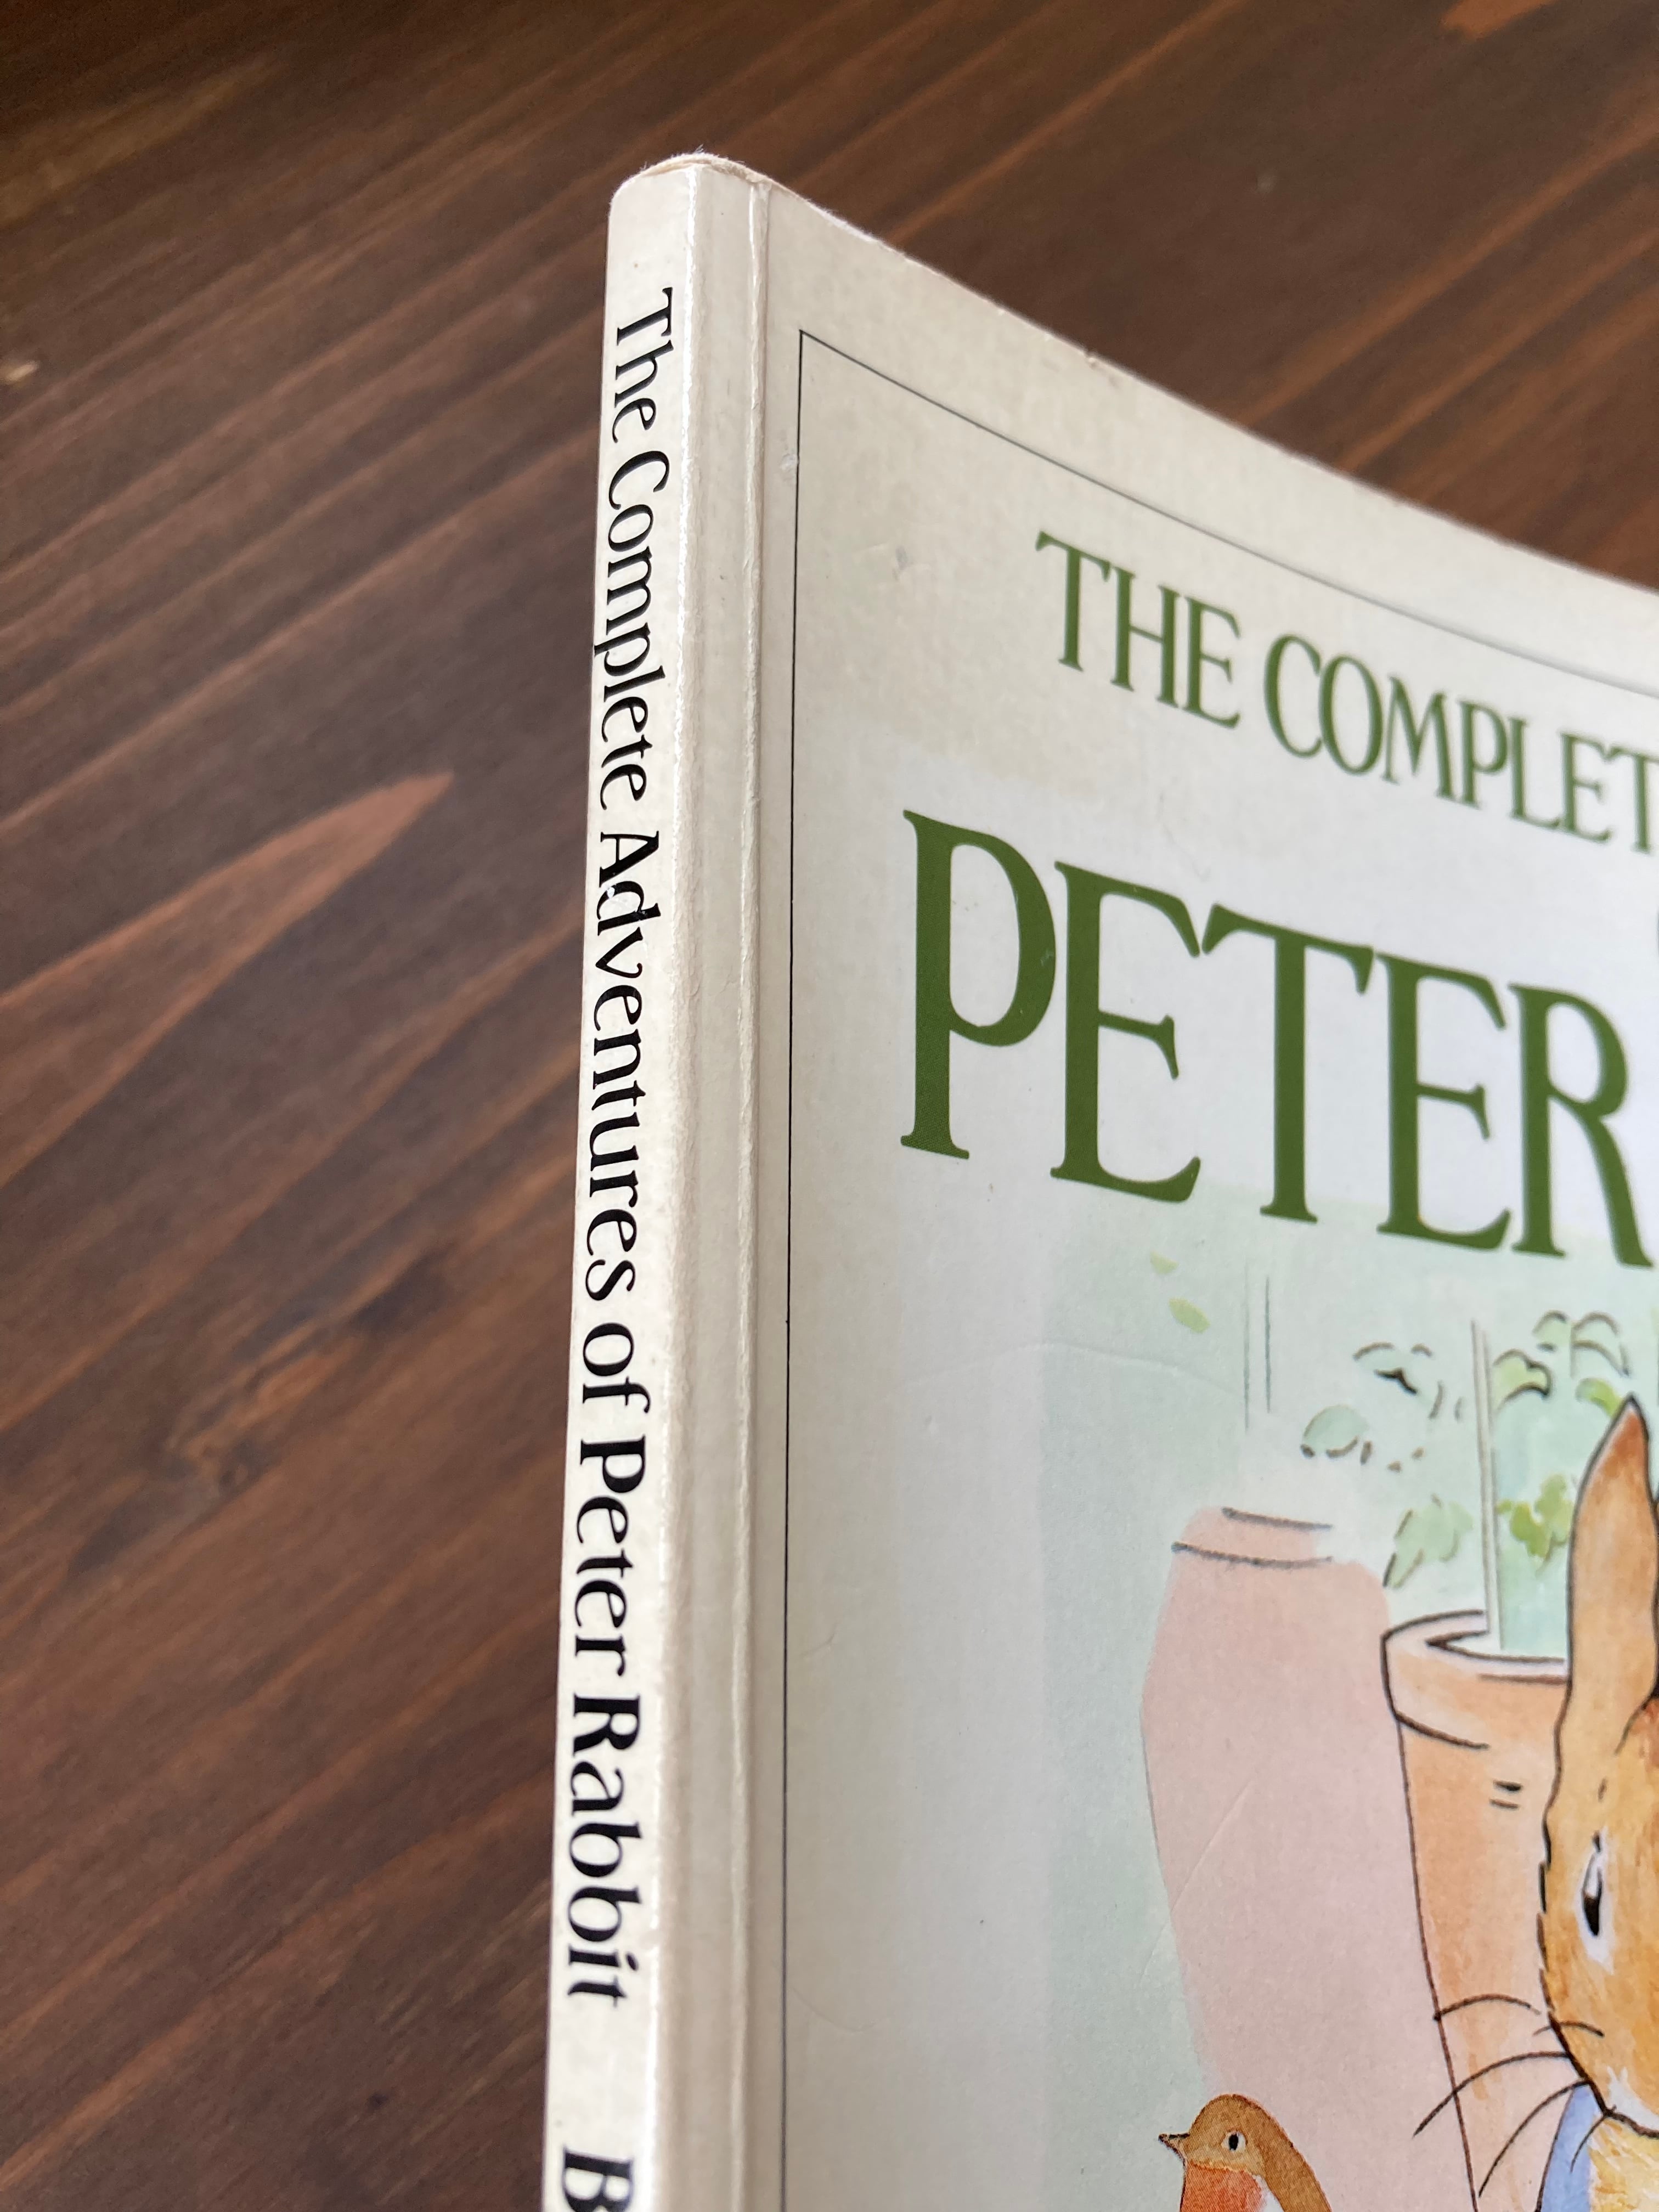 The Complete Adventures of PETER RABBIT